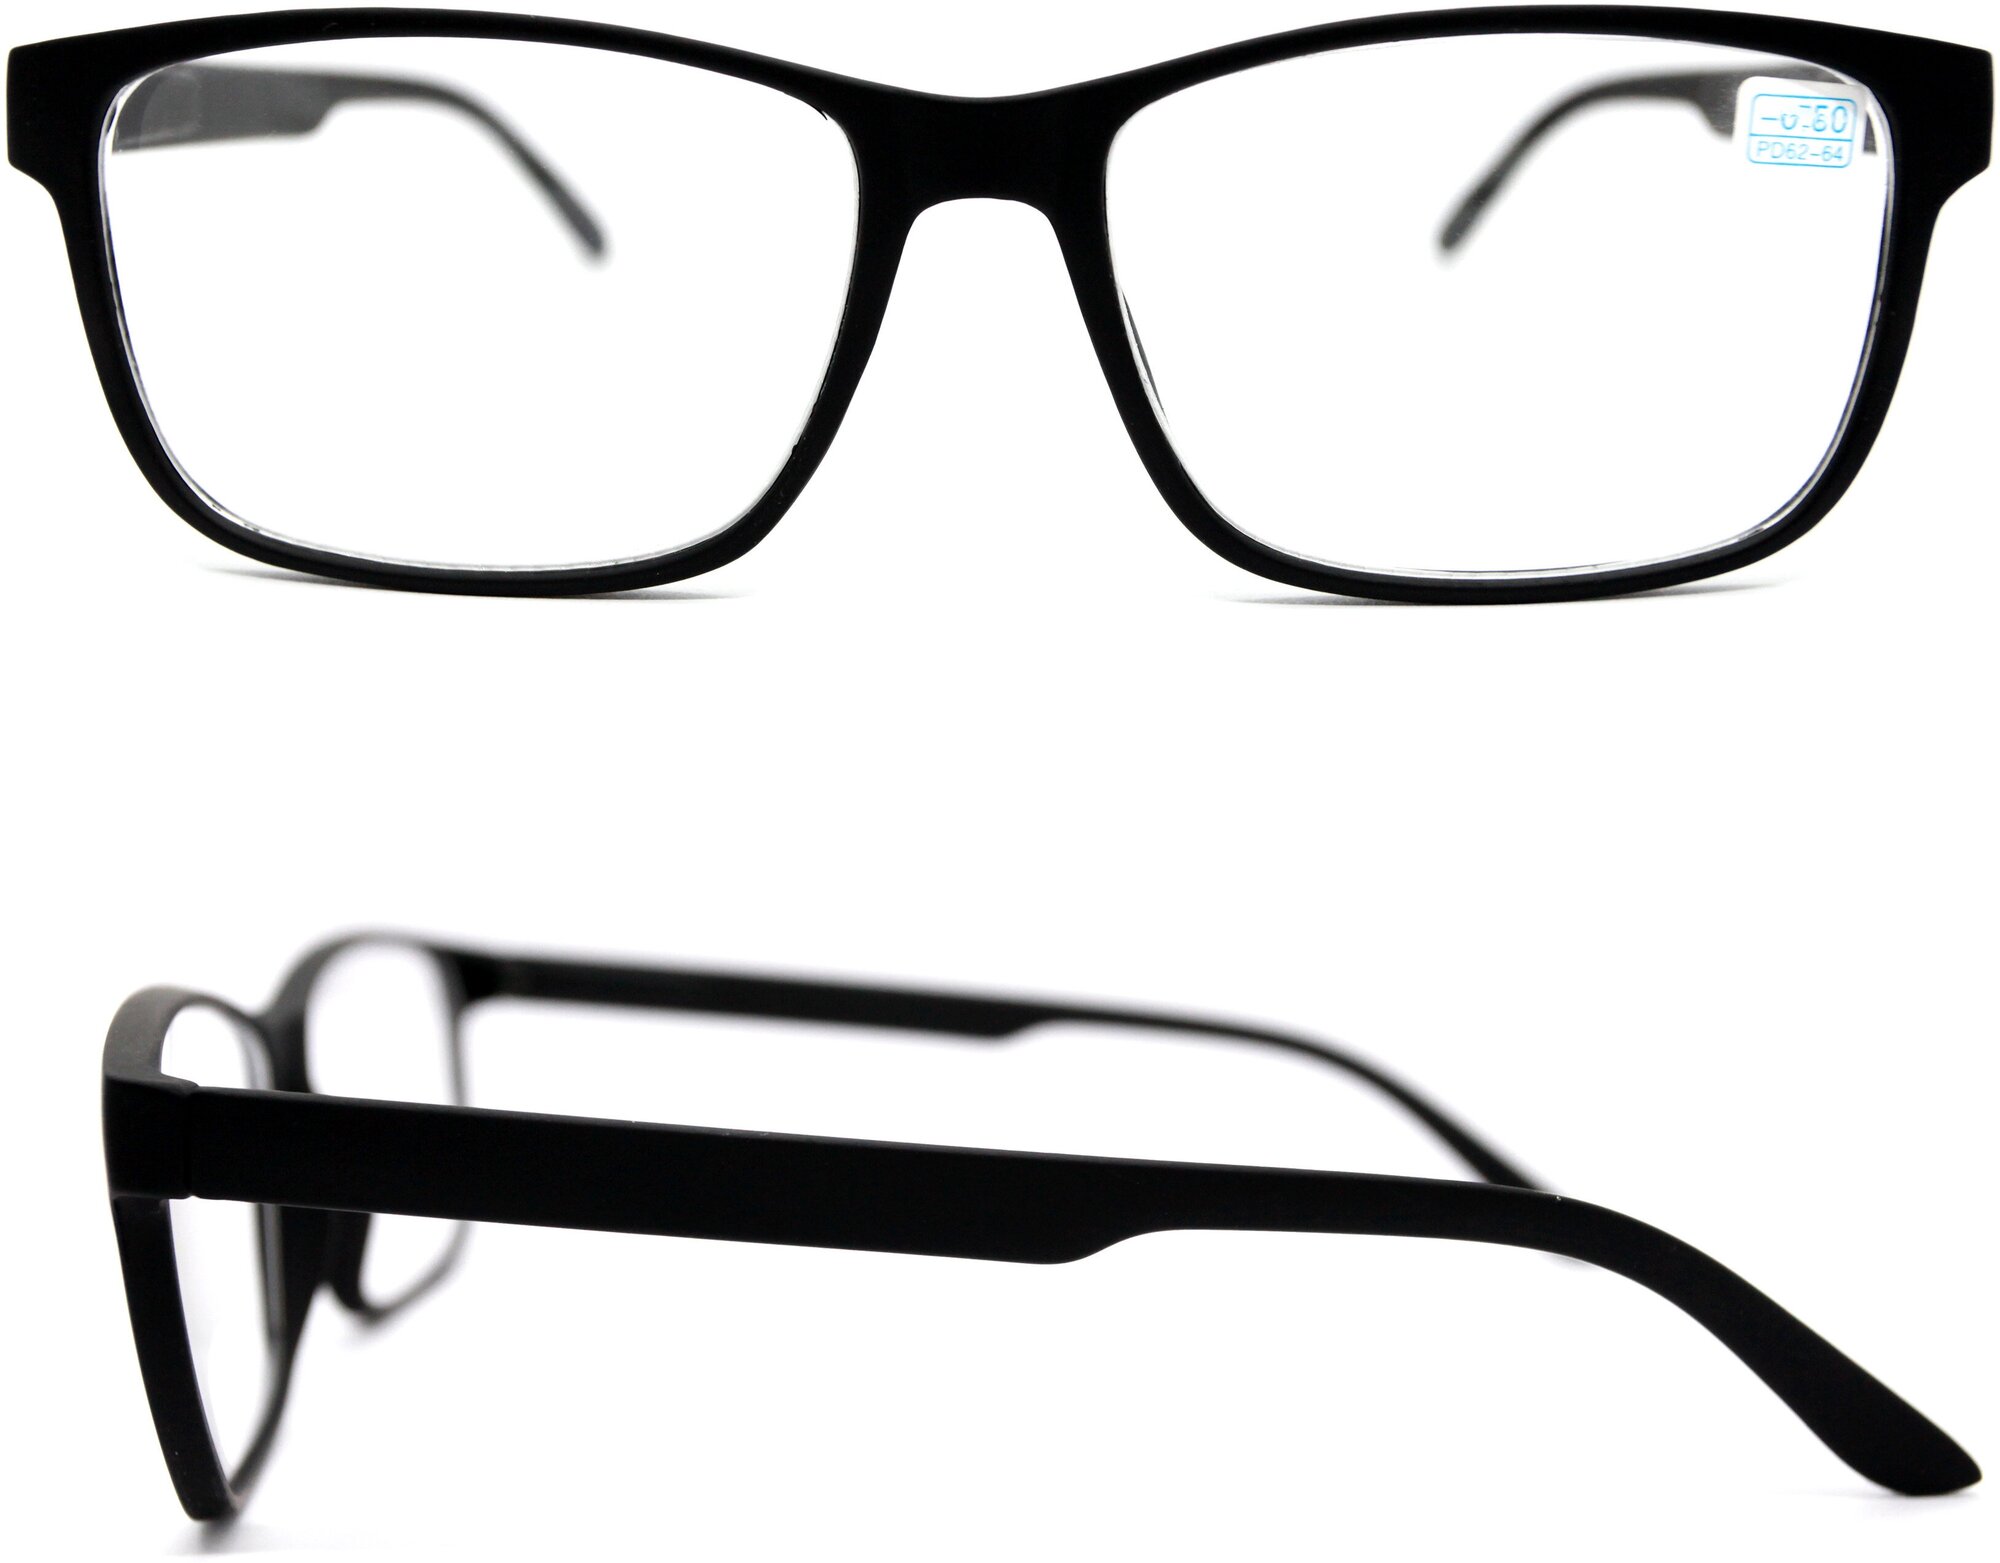 Готовые очки корригирующие для чтения (+2.00) восток 6642 цвет черный РЦ 62-64 салфетка в подарок